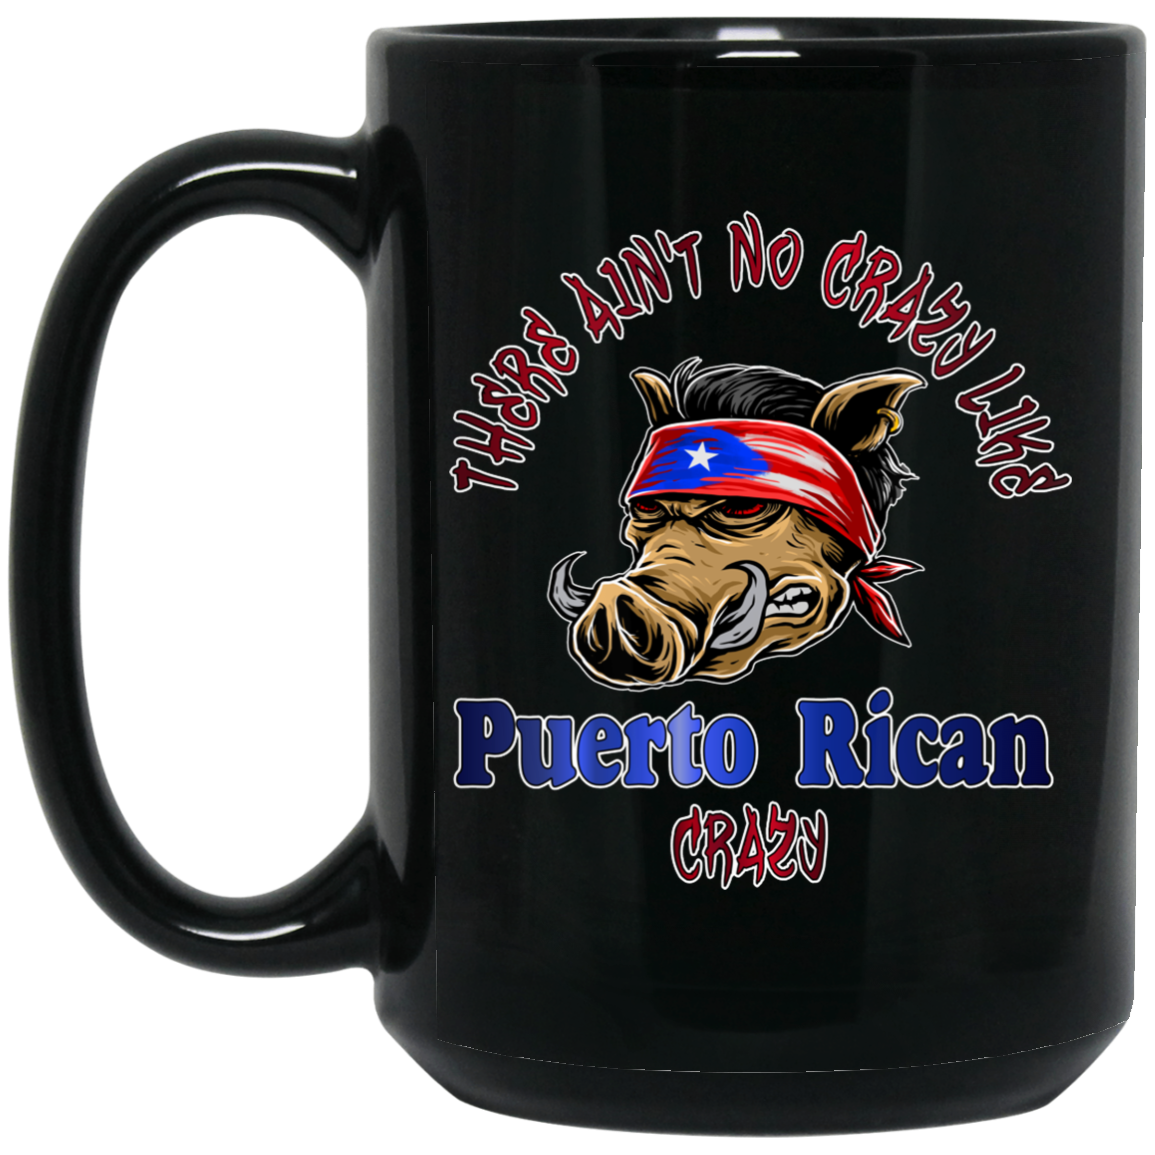 No Crazy Like Puerto Rican Crazy 15 oz. Black Mug